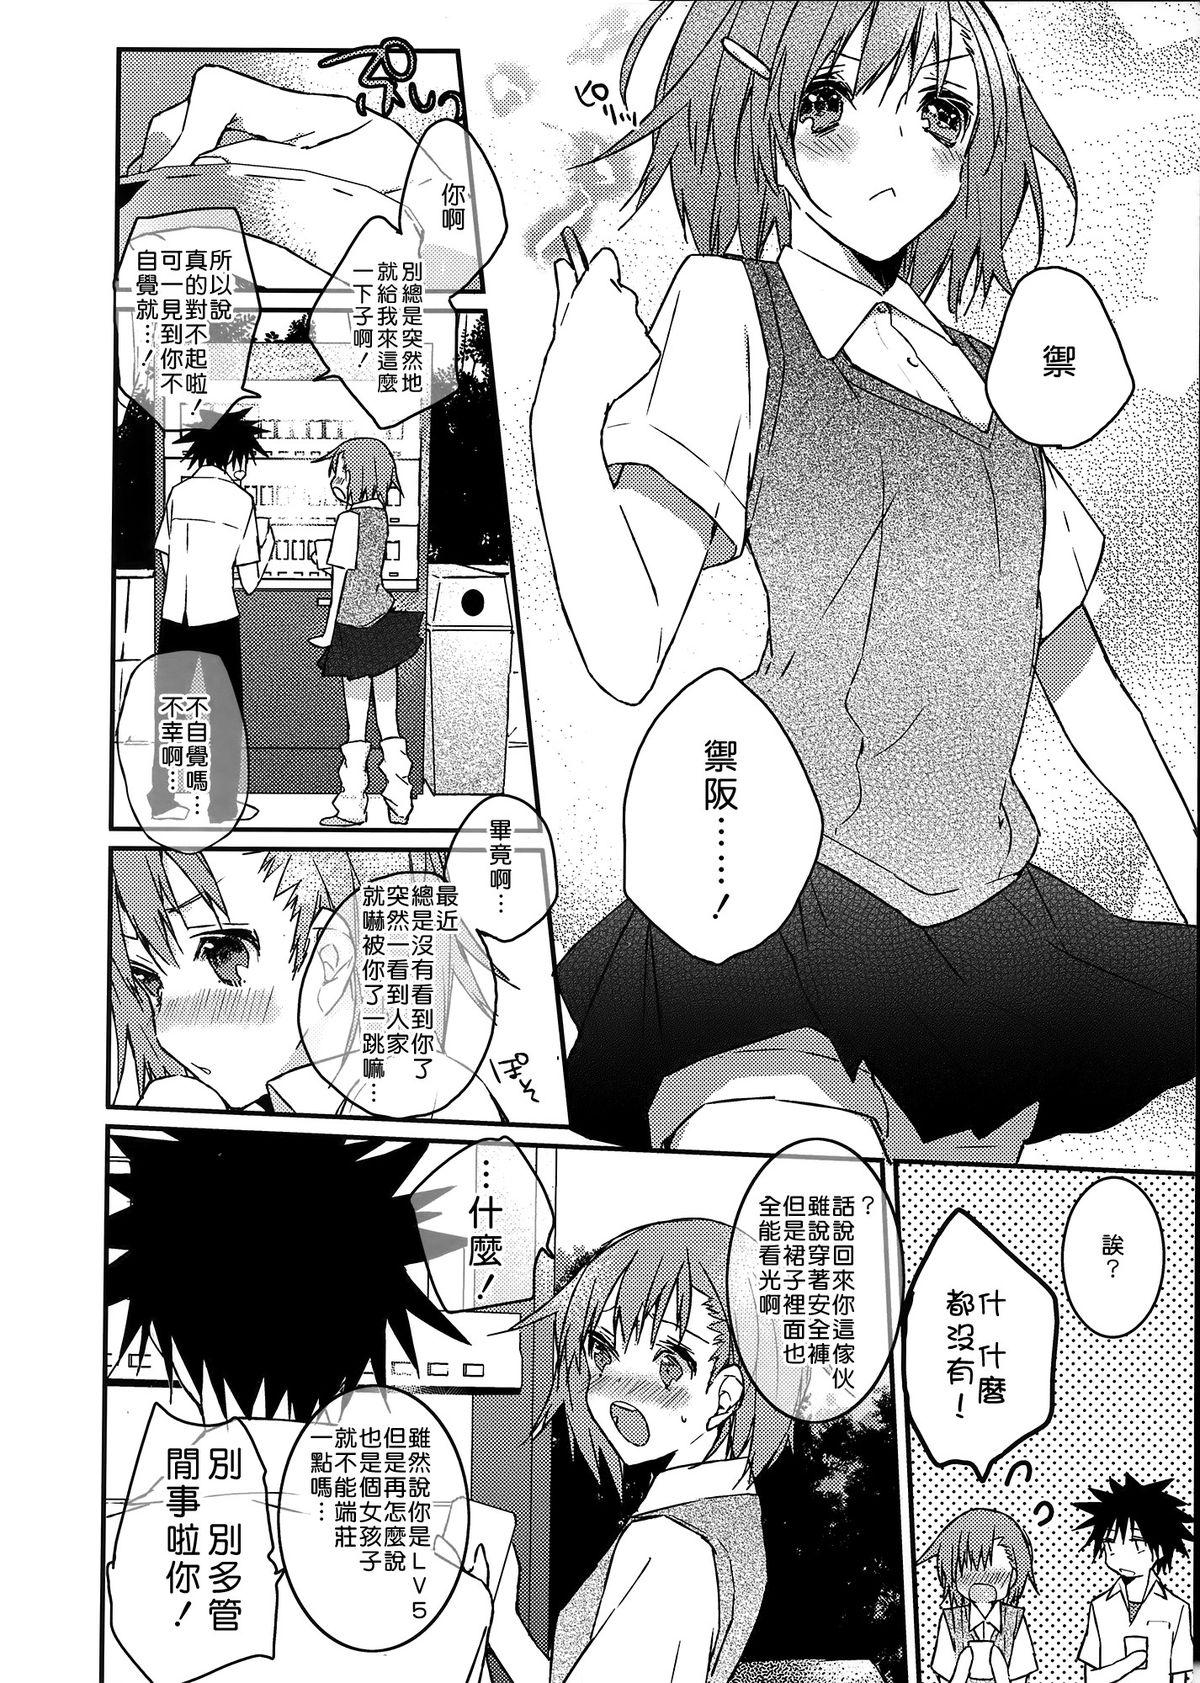 Internal Mikoto to. 1 - Toaru kagaku no railgun Toaru majutsu no index Boy Girl - Page 7